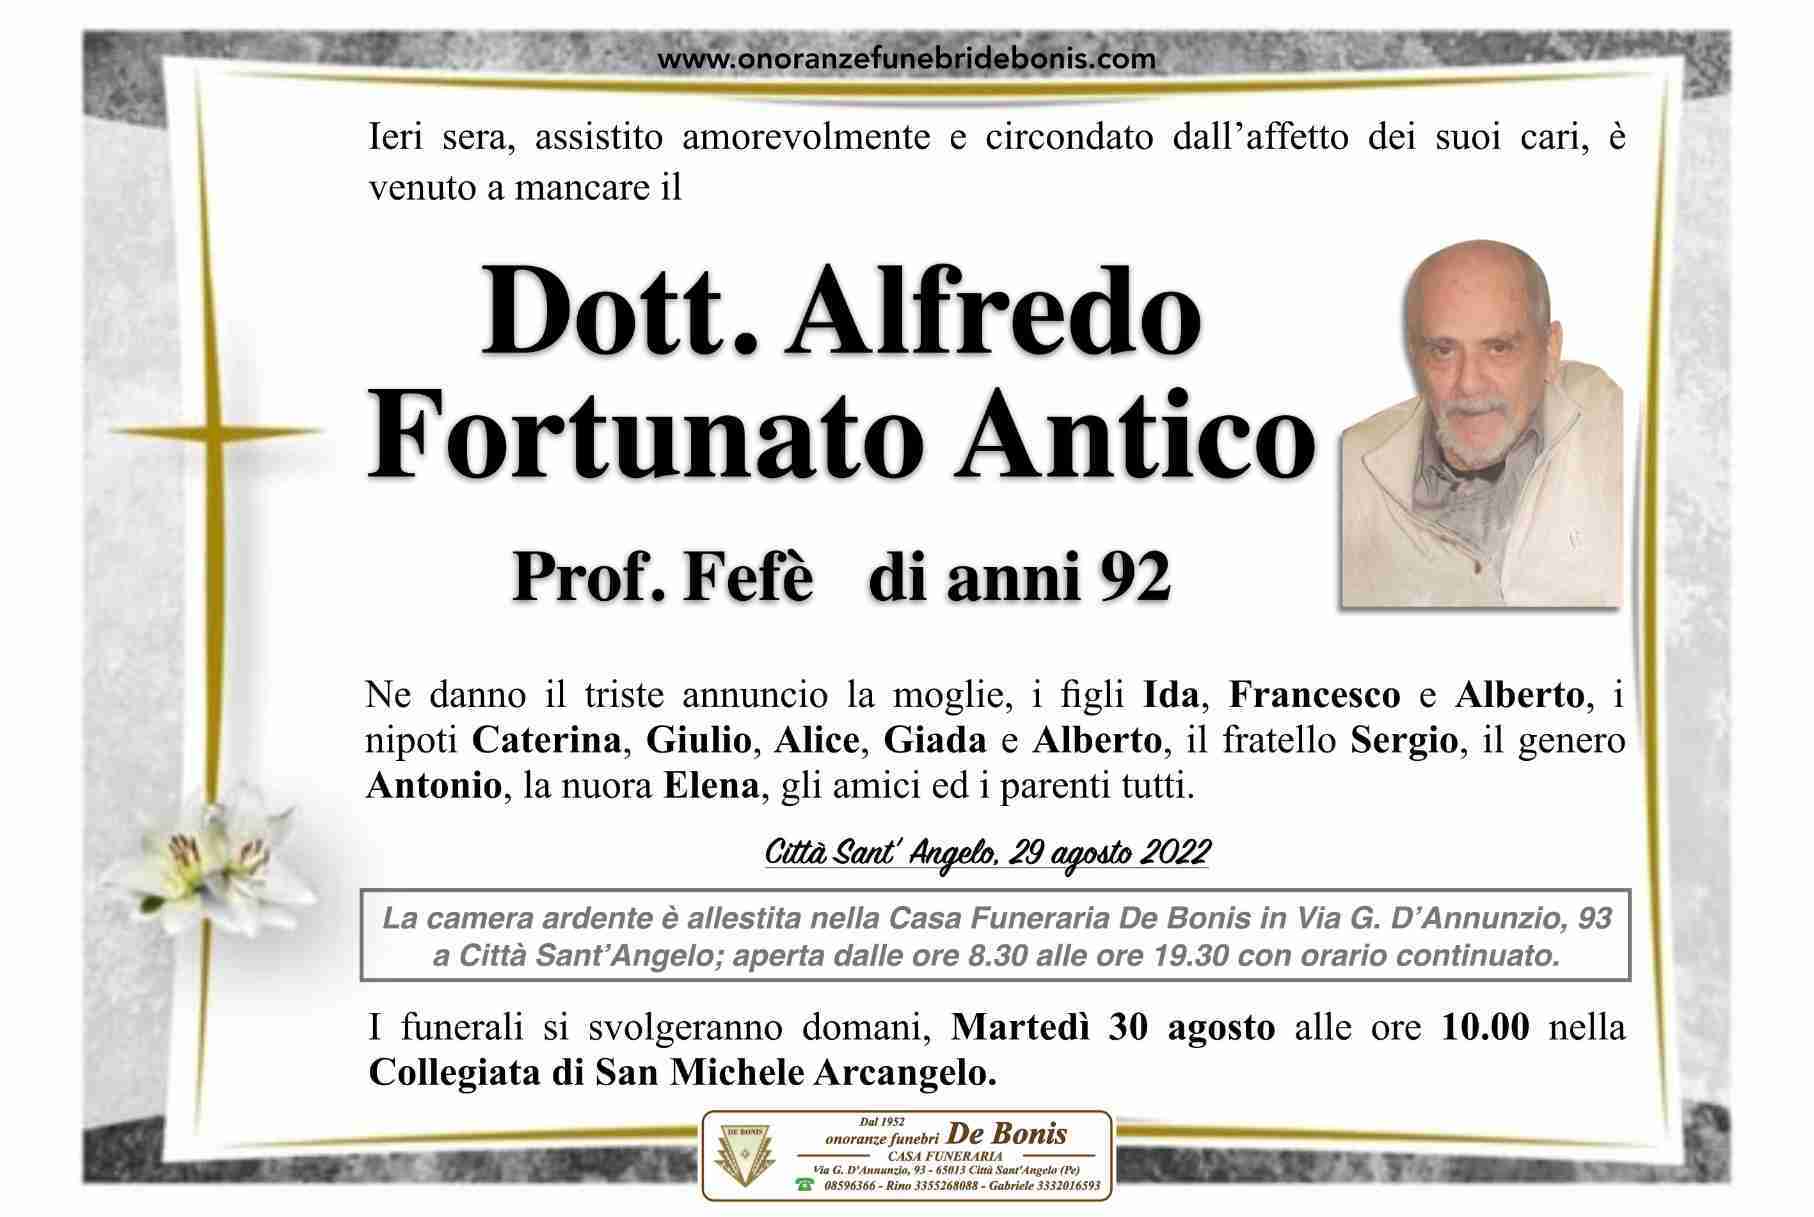 Alfredo Fortunato Antico